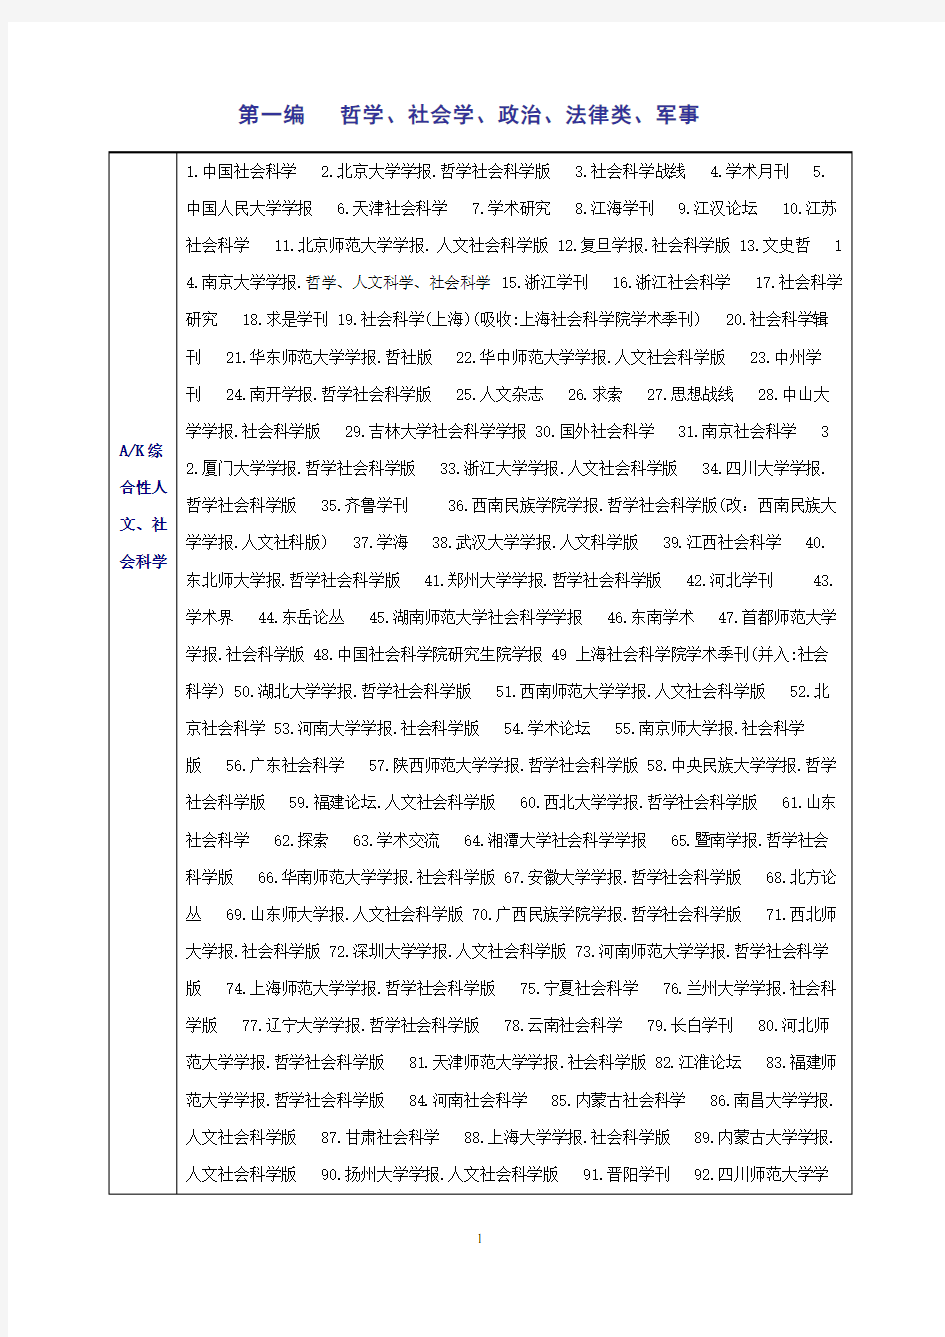 北大中文核心期刊第五版目录(2008年版)